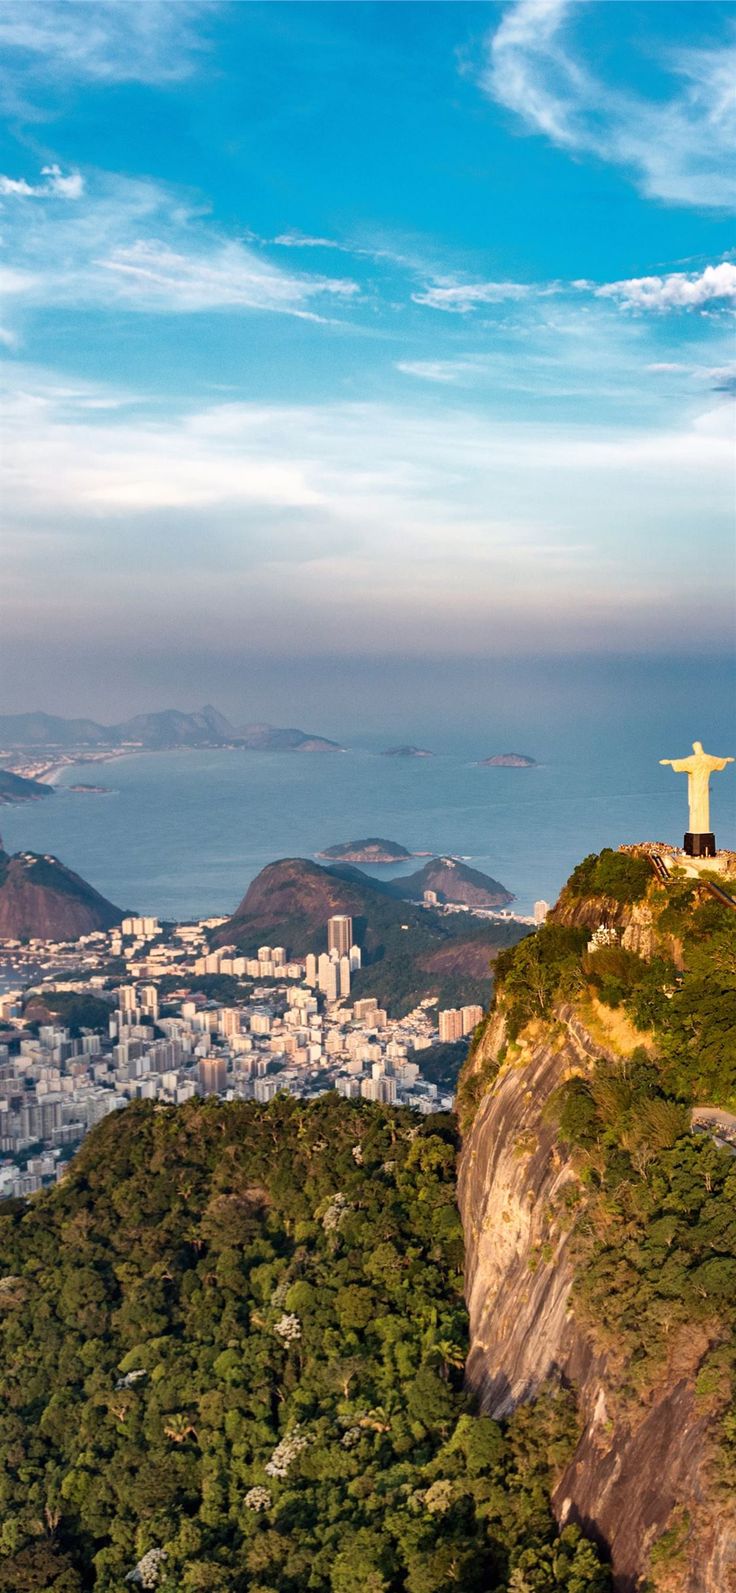 Wallpaper : Brazil, Rio de Janeiro, view from the top 3008x2000 -  4kWallpaper - 654049 - HD Wallpapers - WallHere